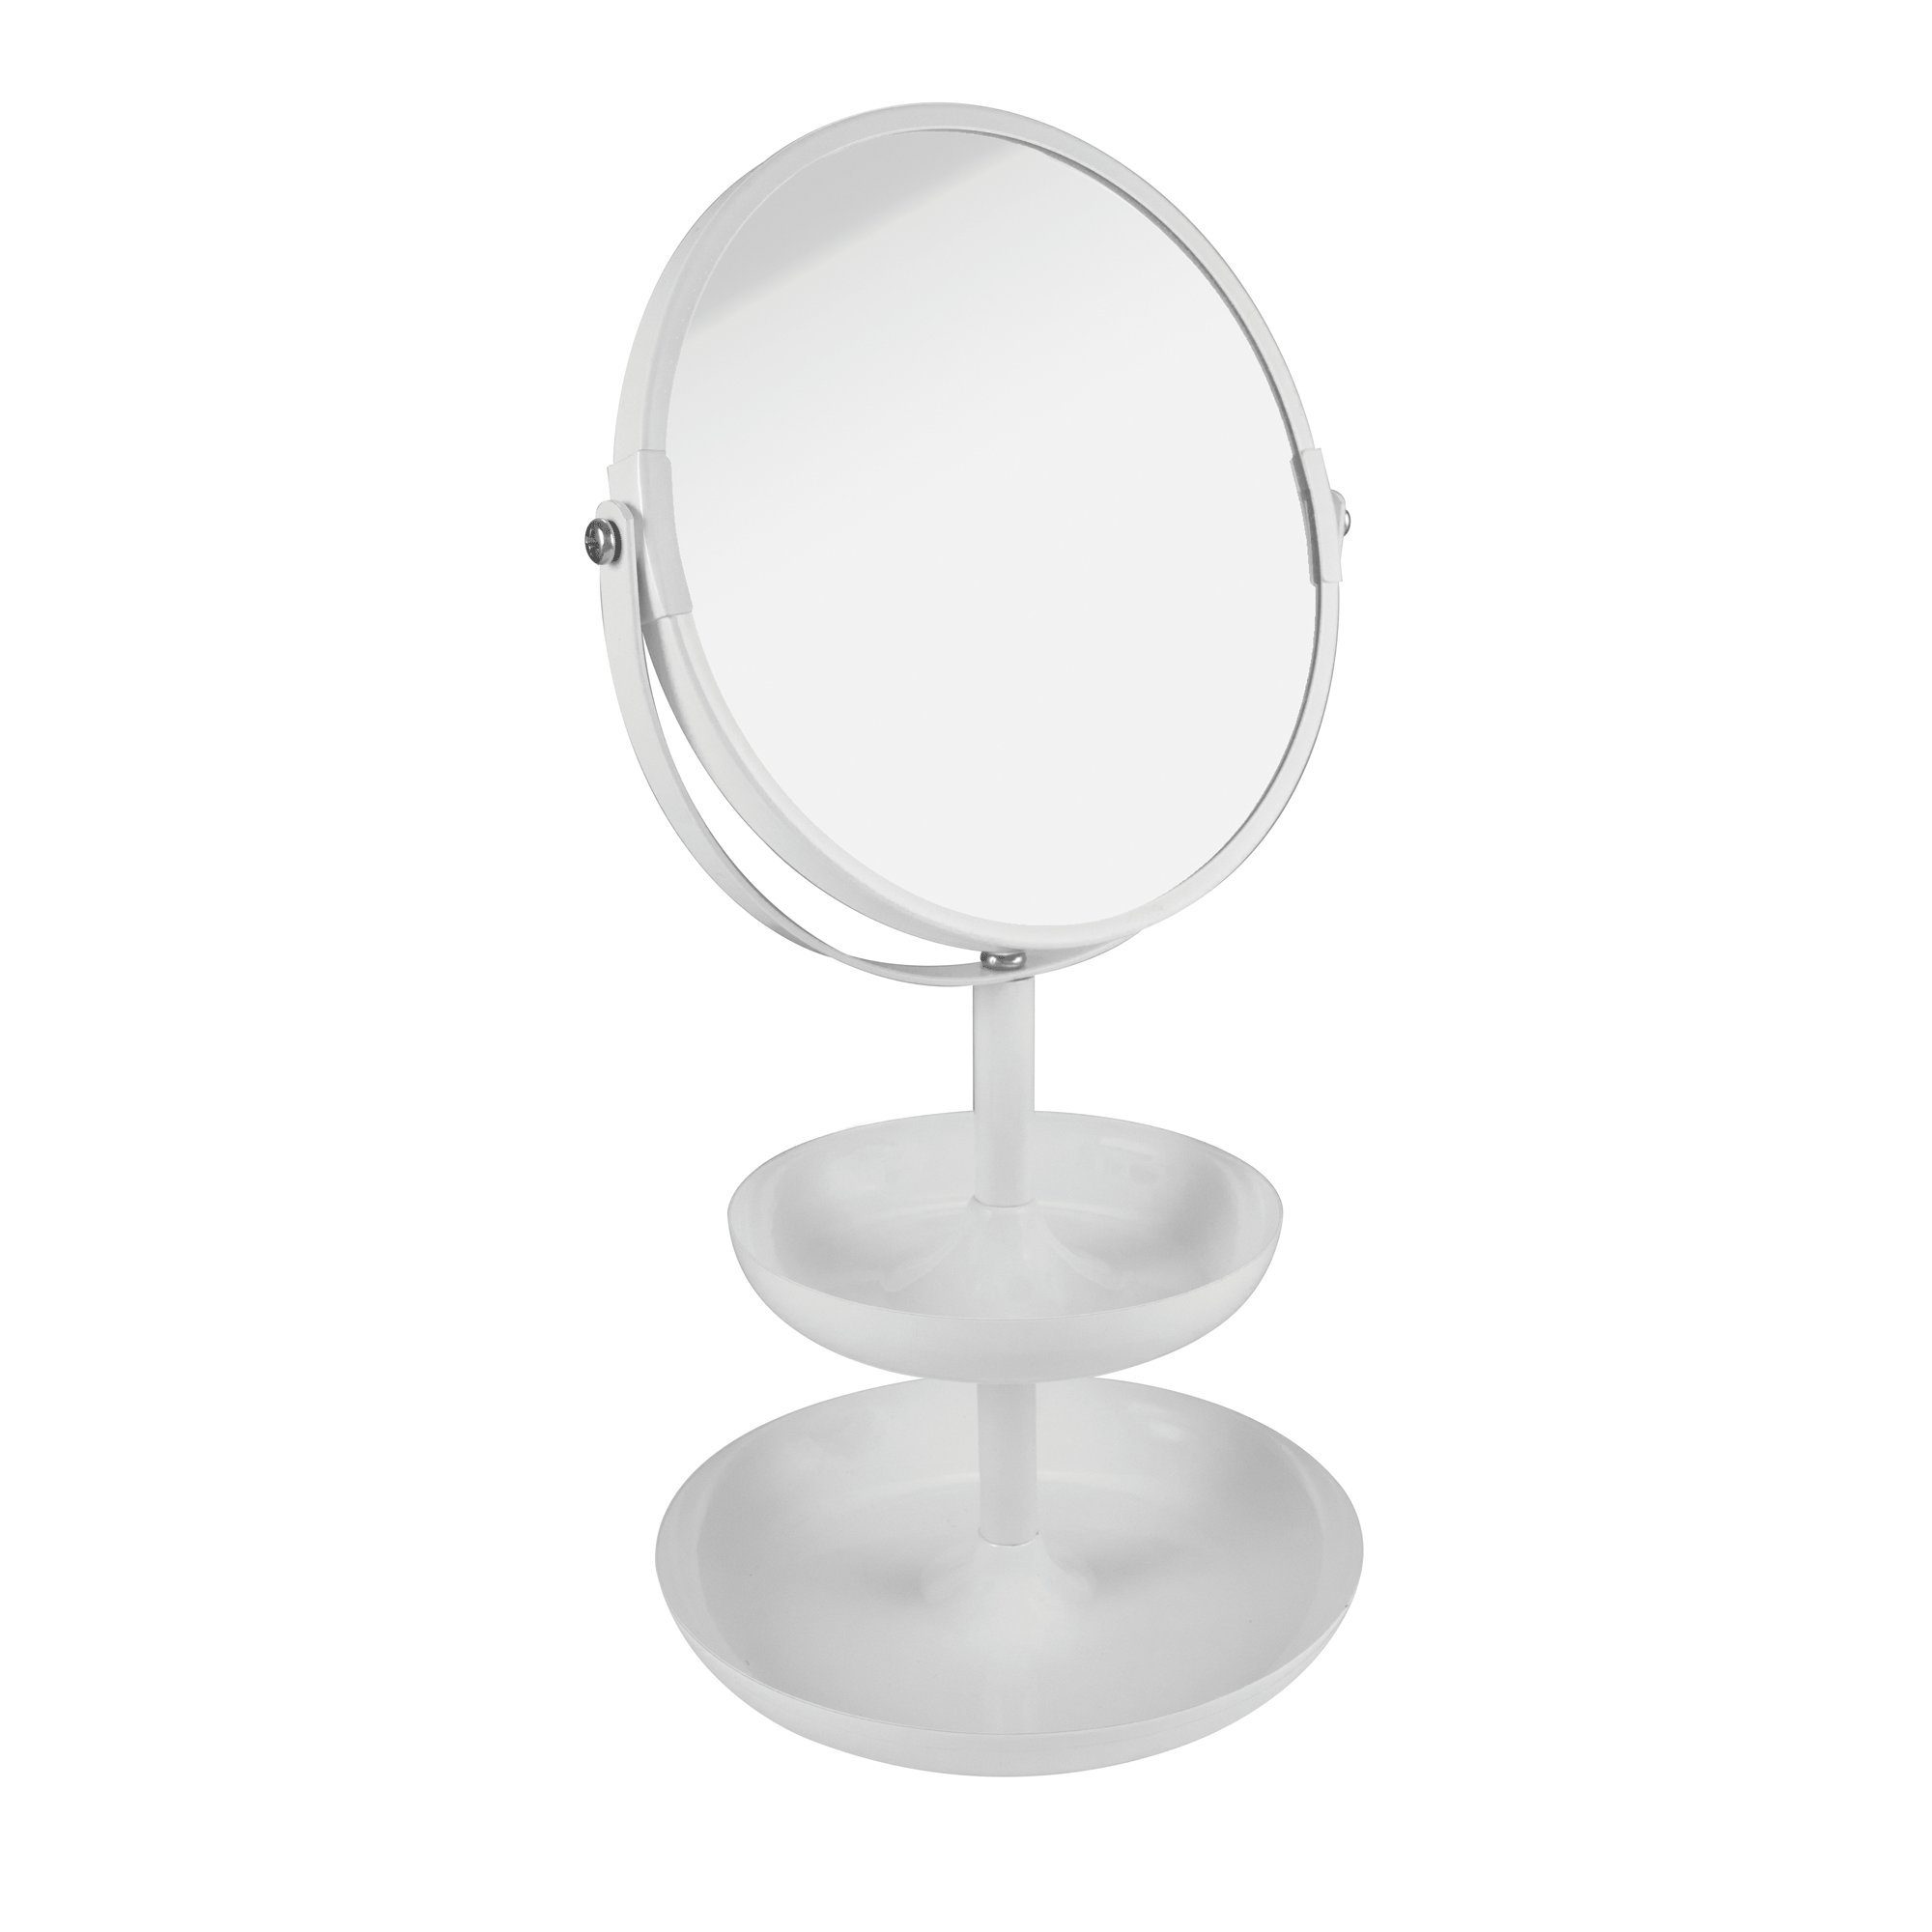 PARSA Beauty Spiegel Standspiegel Etagere weiß matt mit 3-fach Vergrößerung